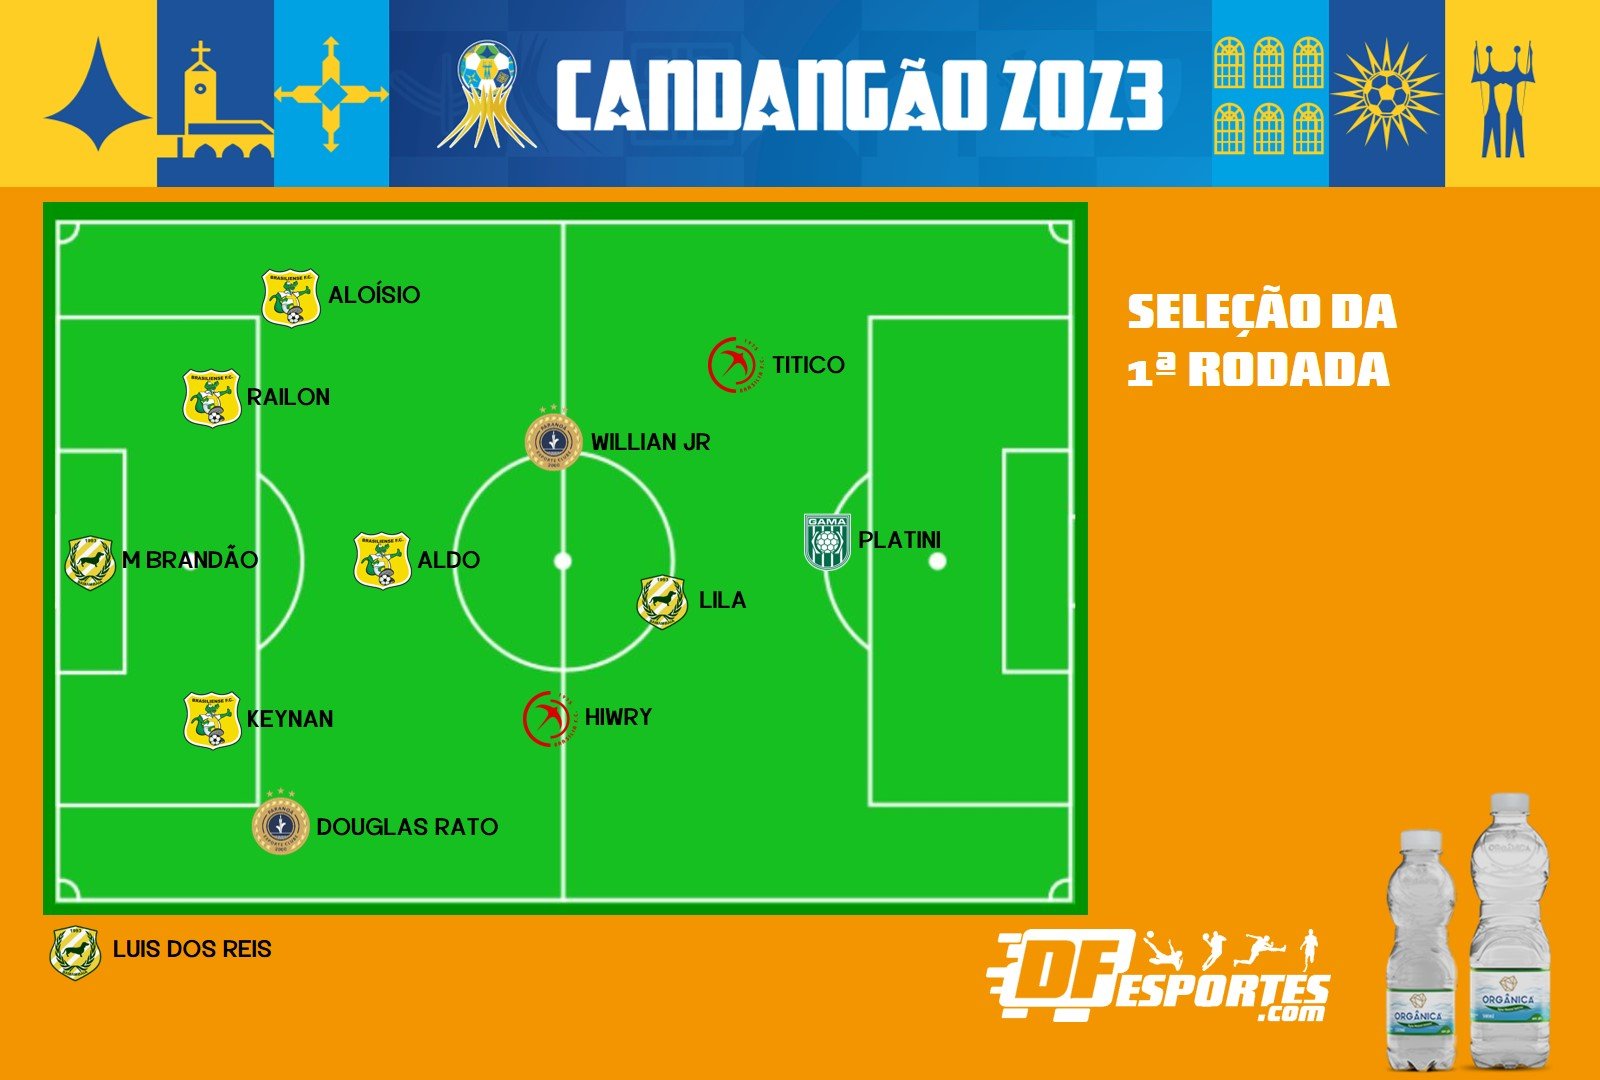 DF Esportes elege a seleção da primeira rodada do Candangão